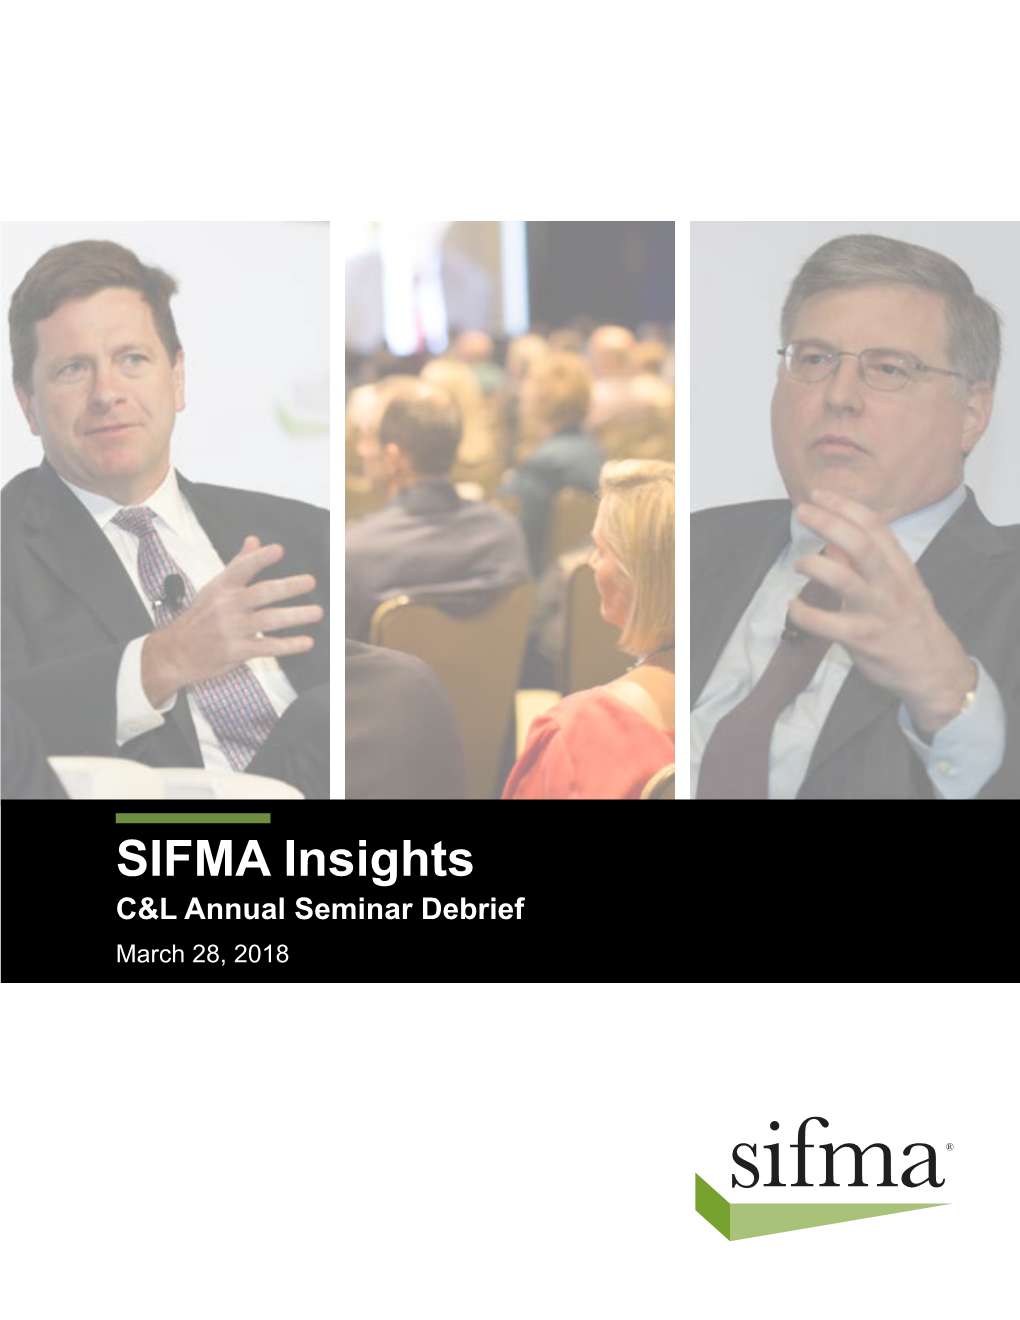 SIFMA Insights: 2018 SIFMA C&L Annual Seminar Debrief